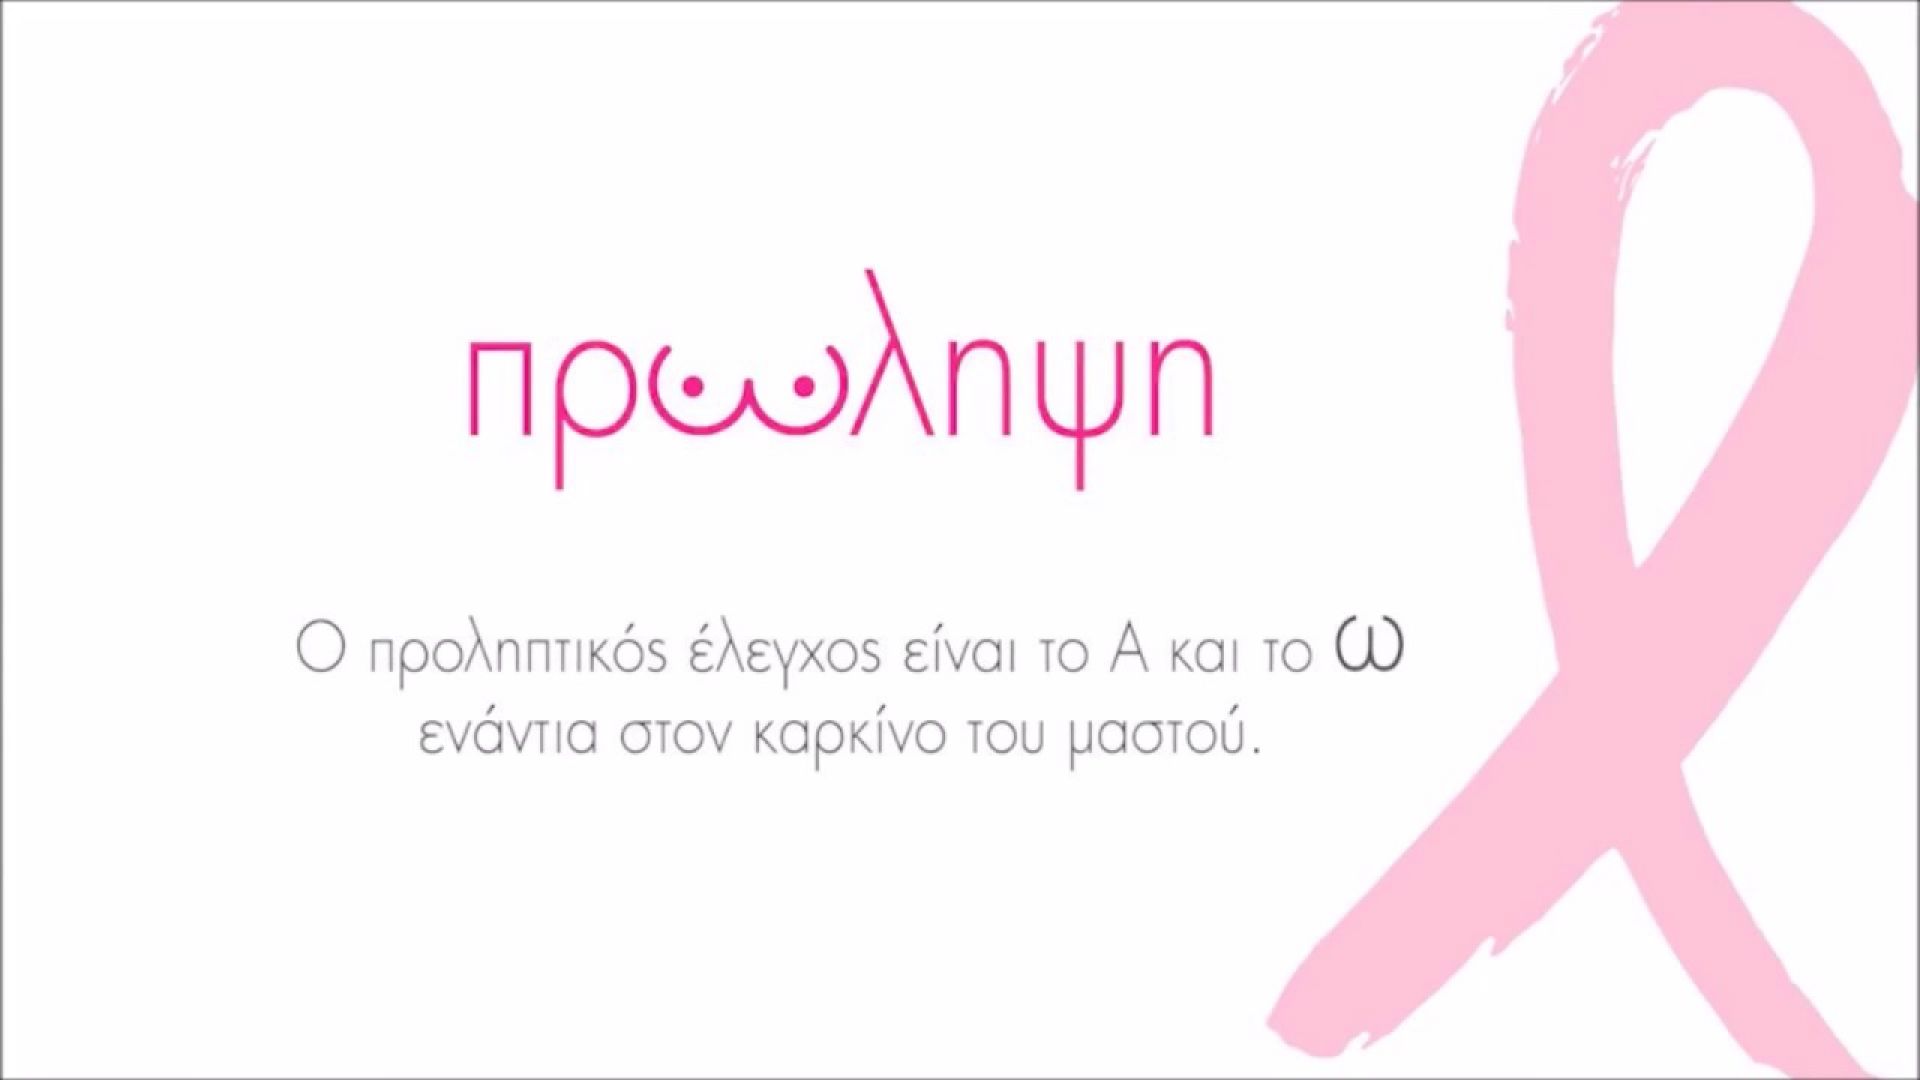  Άλμα Ζωής: Δωρεάν εξέταση μαστού σε Αθήνα, Θεσσαλονίκη και Πάτρα